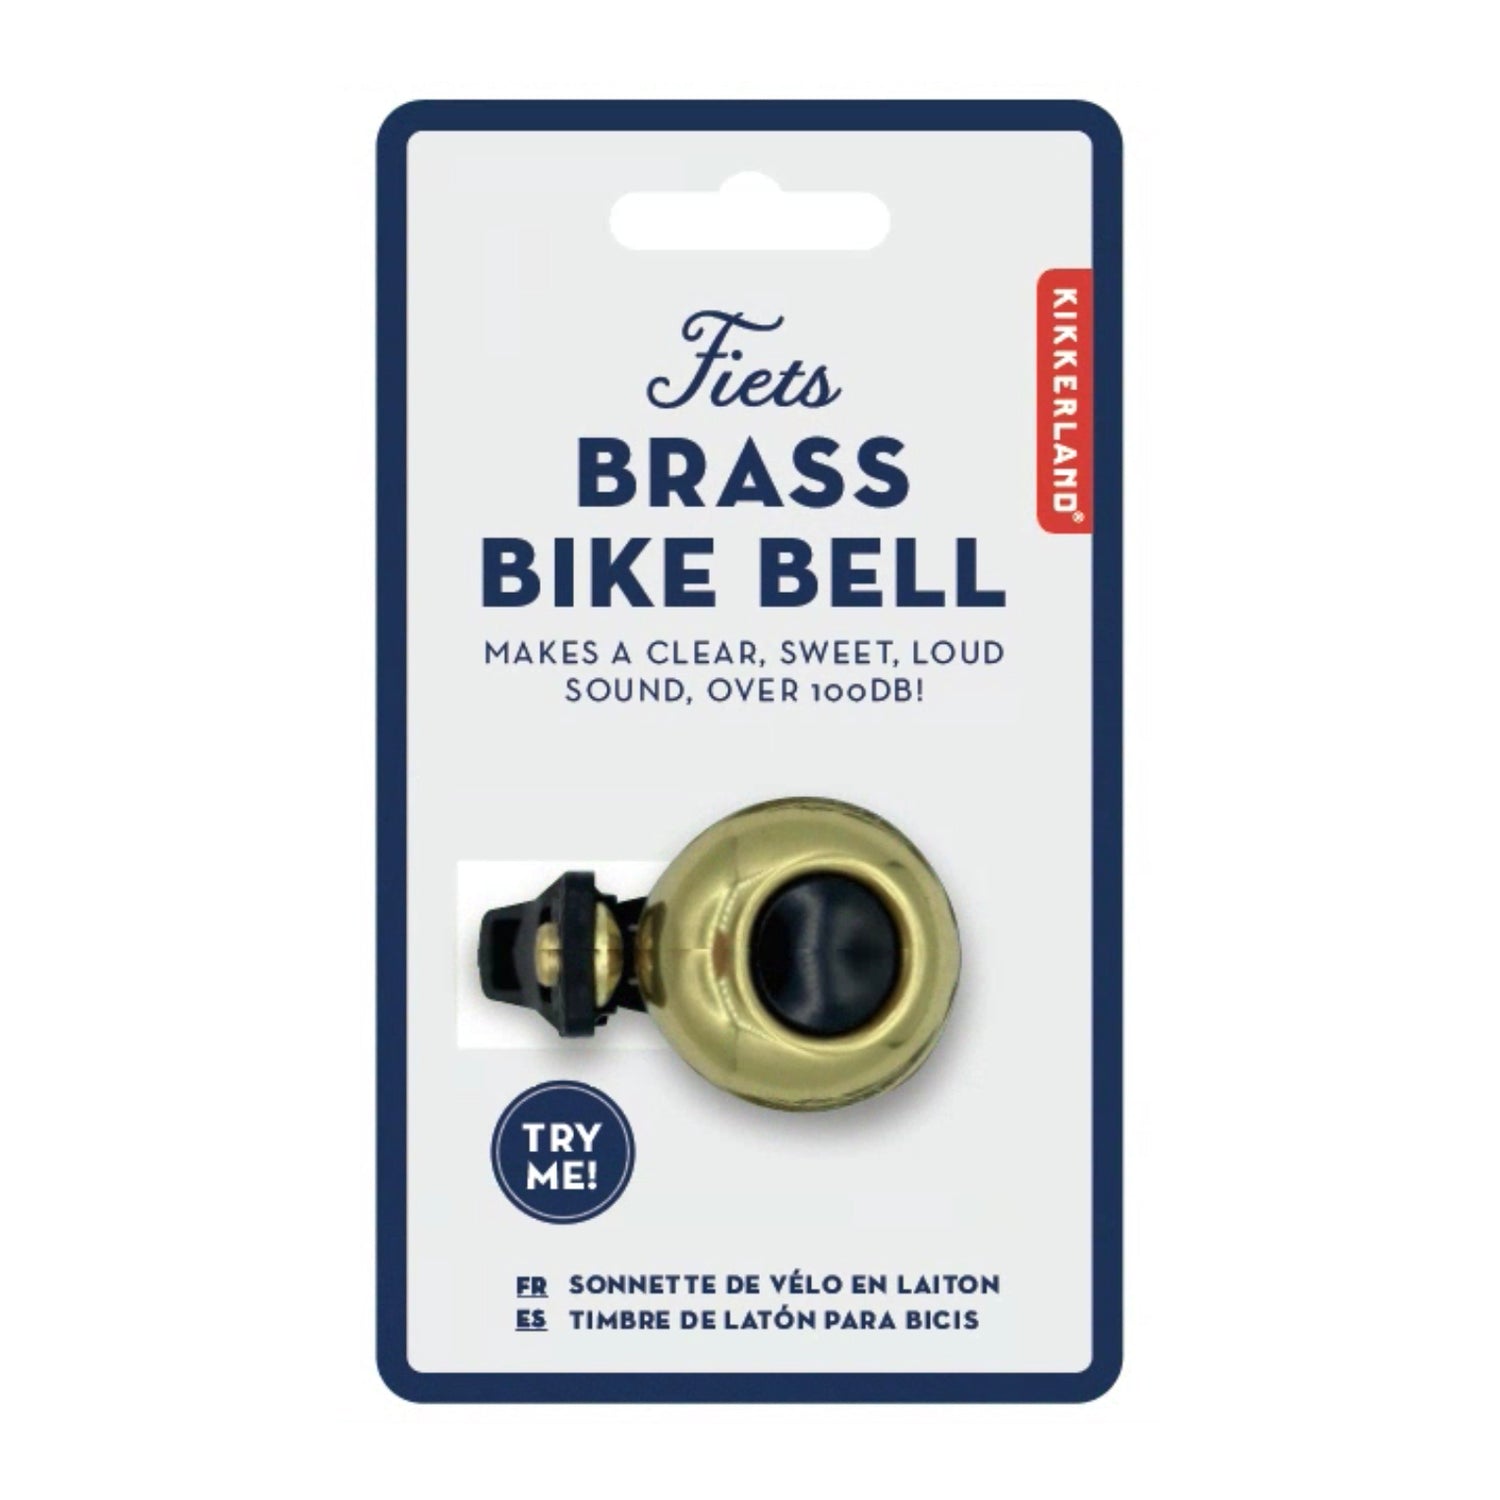 Fiets Brass Bike Bell